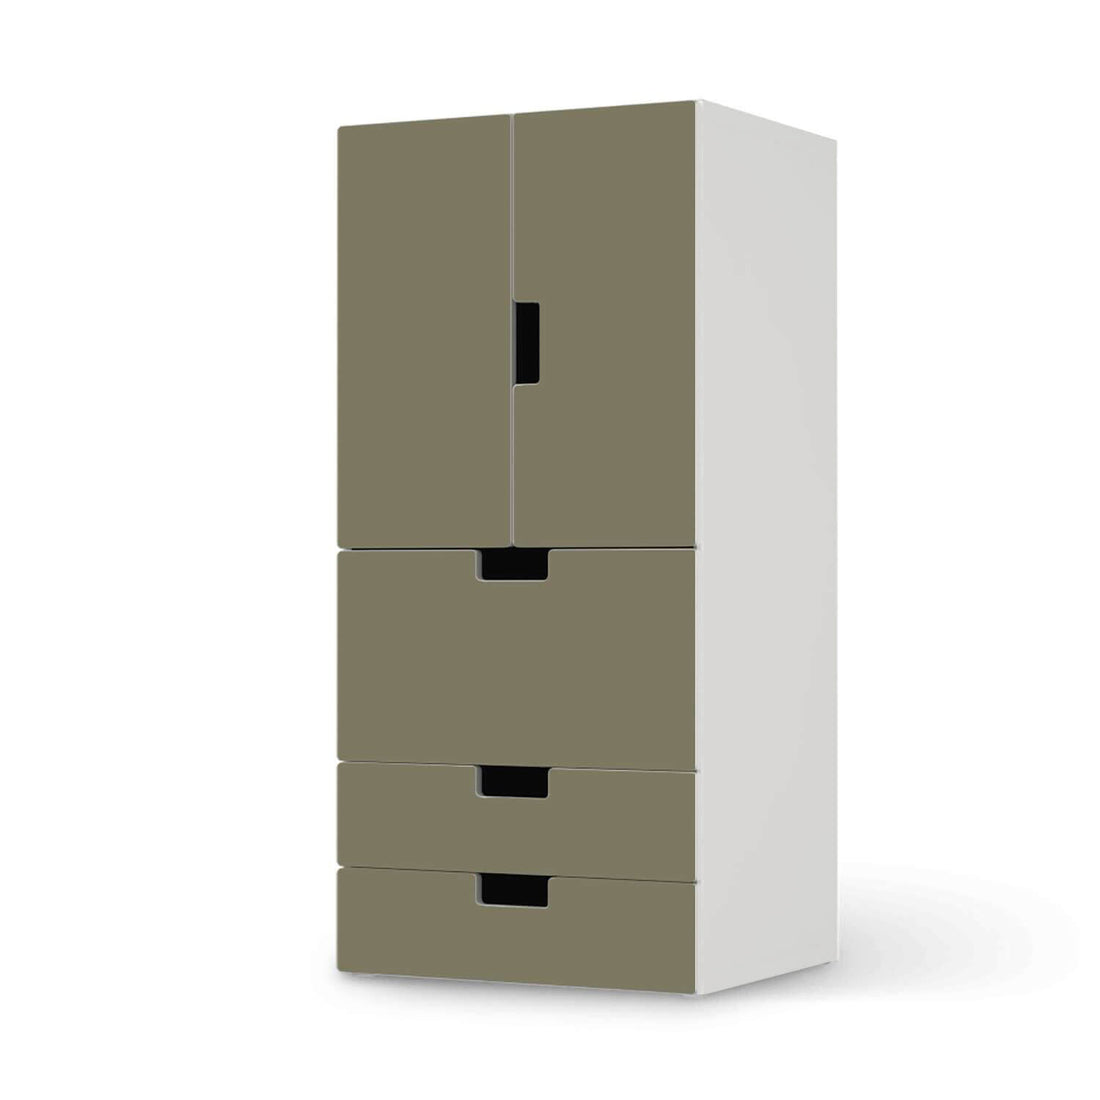 Möbelfolie Braungrau Light - IKEA Stuva kombiniert - 3 Schubladen und 2 kleine Türen  - weiss